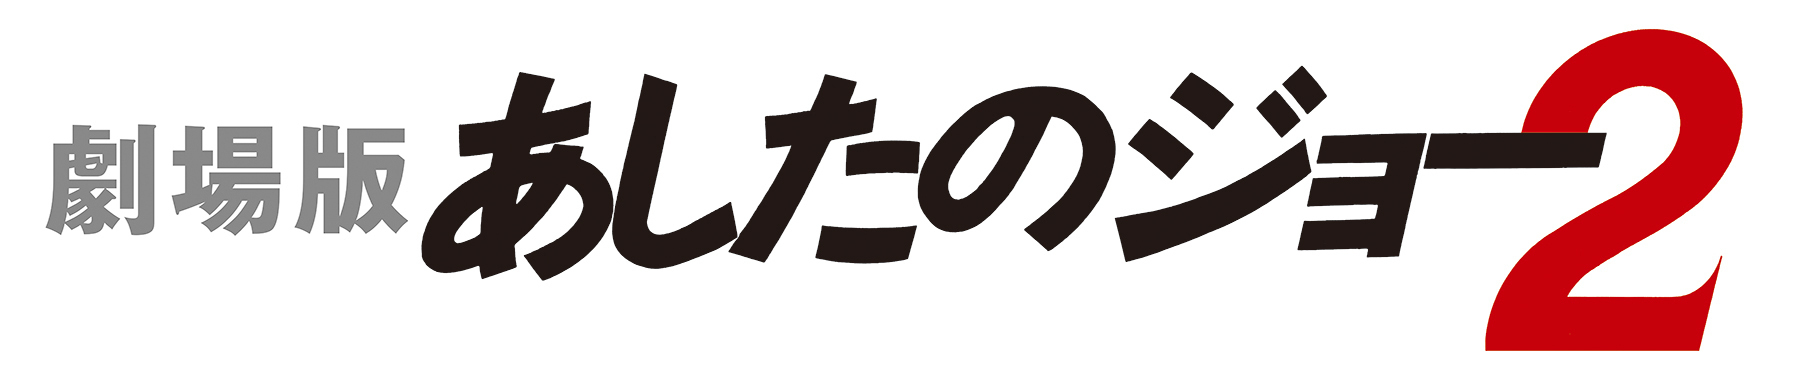 出崎統監督 伝説のライブラリーアニメ 劇場版 Space Adventure コブラ 劇場版 あしたのジョー2 日本初の4k Ultra Hdフォーマットで発売決定 株式会社トムス エンタテインメントのプレスリリース